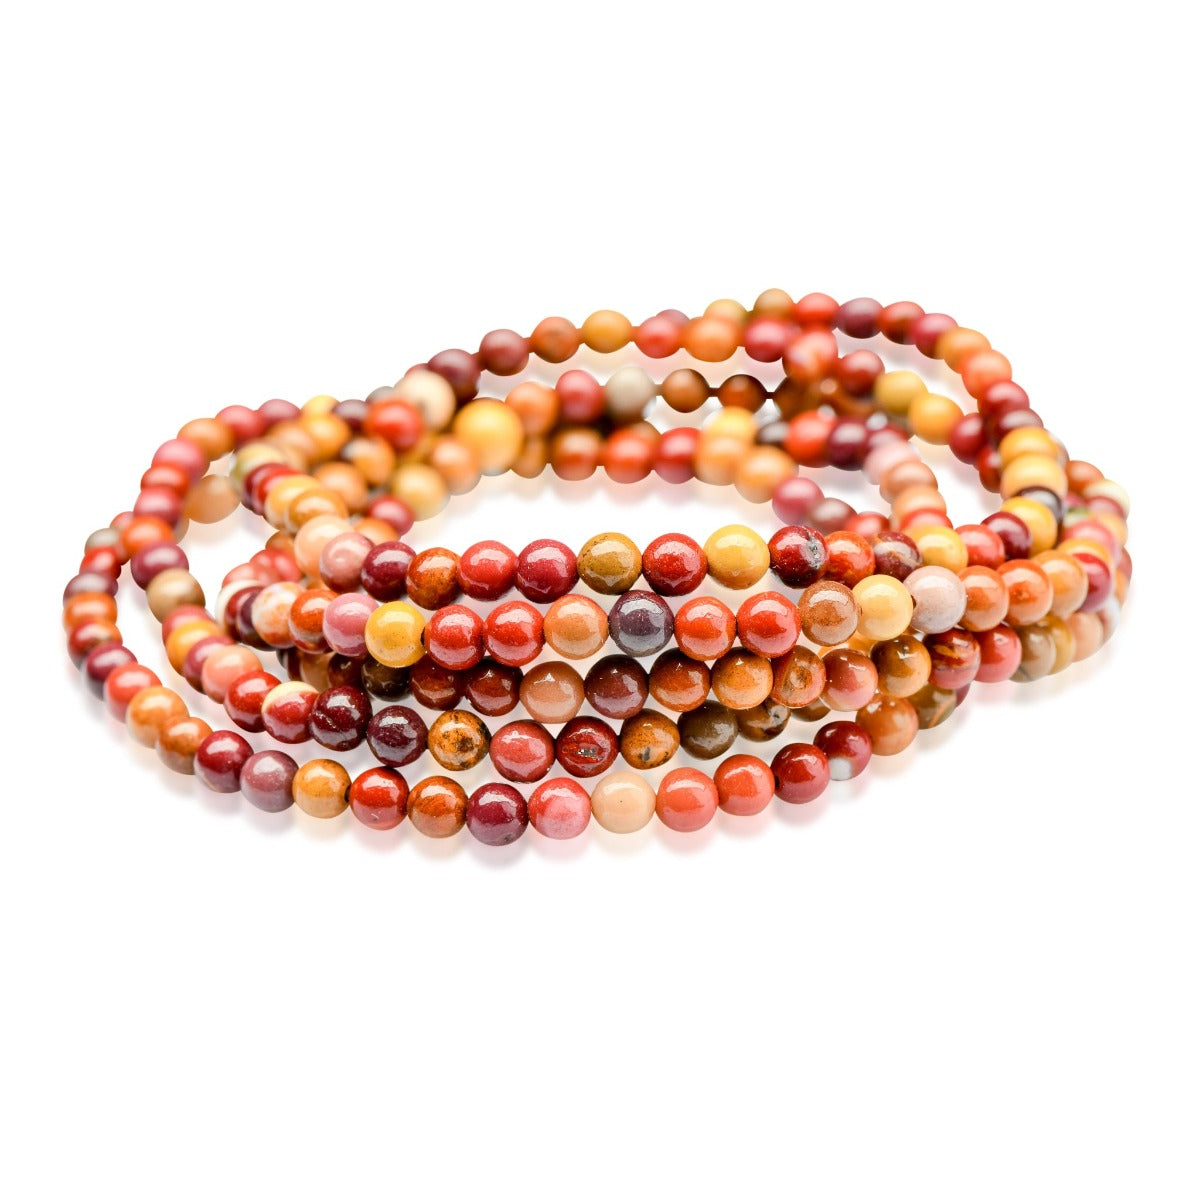 Mookaite Jasper Beaded Bracelet - Small Beads